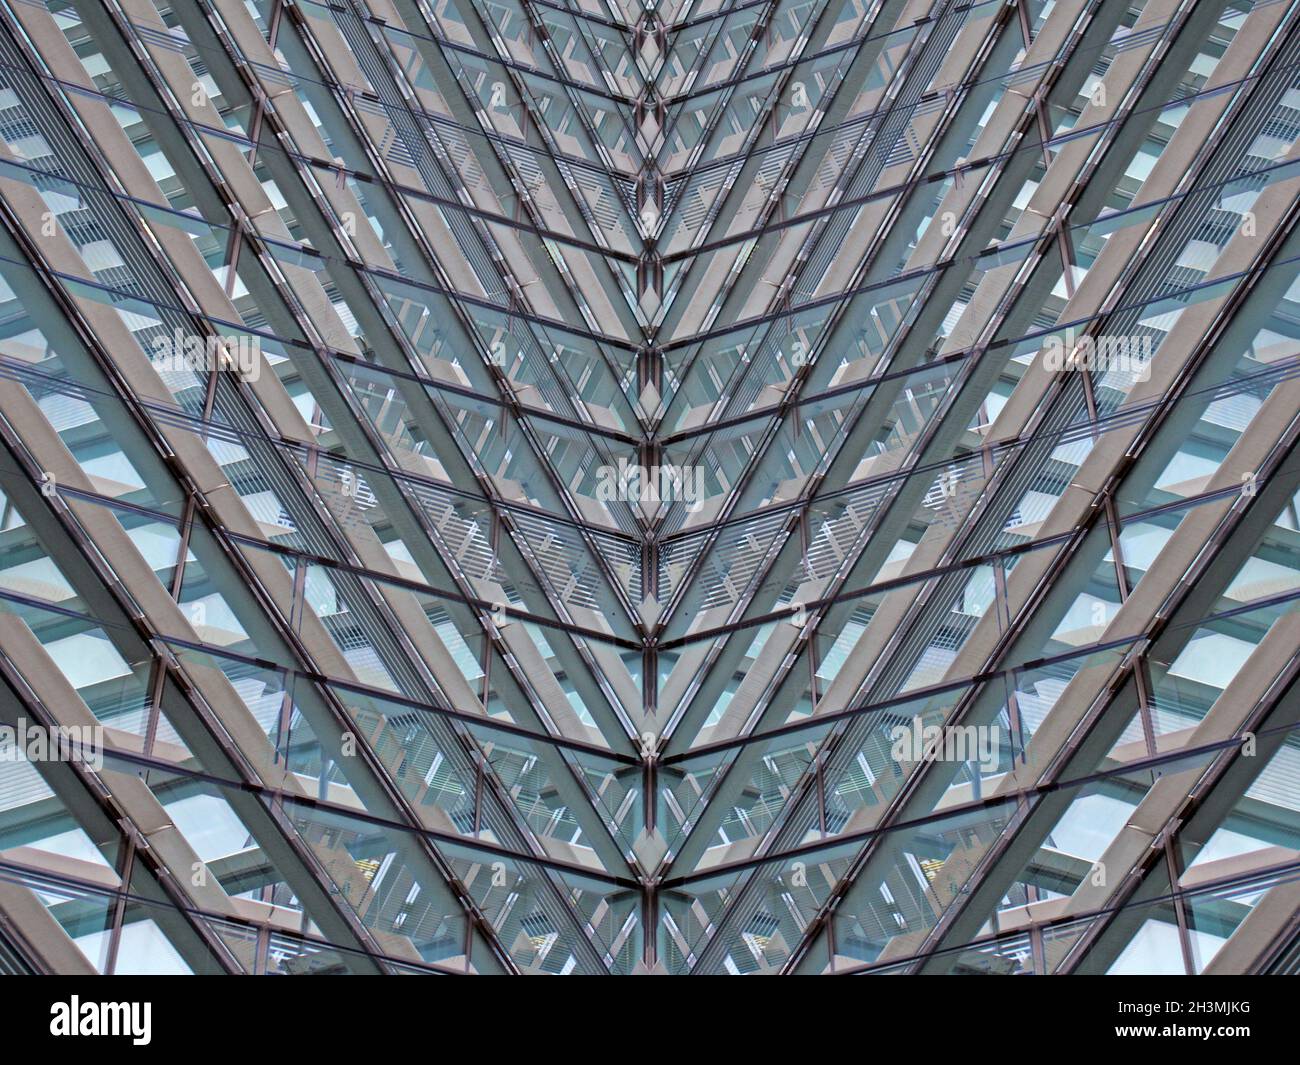 Un résumé architectural moderne plein cadre avec des formes géométriques futuristes et des lignes réfléchis angulaires en verre bleu et en acier Banque D'Images